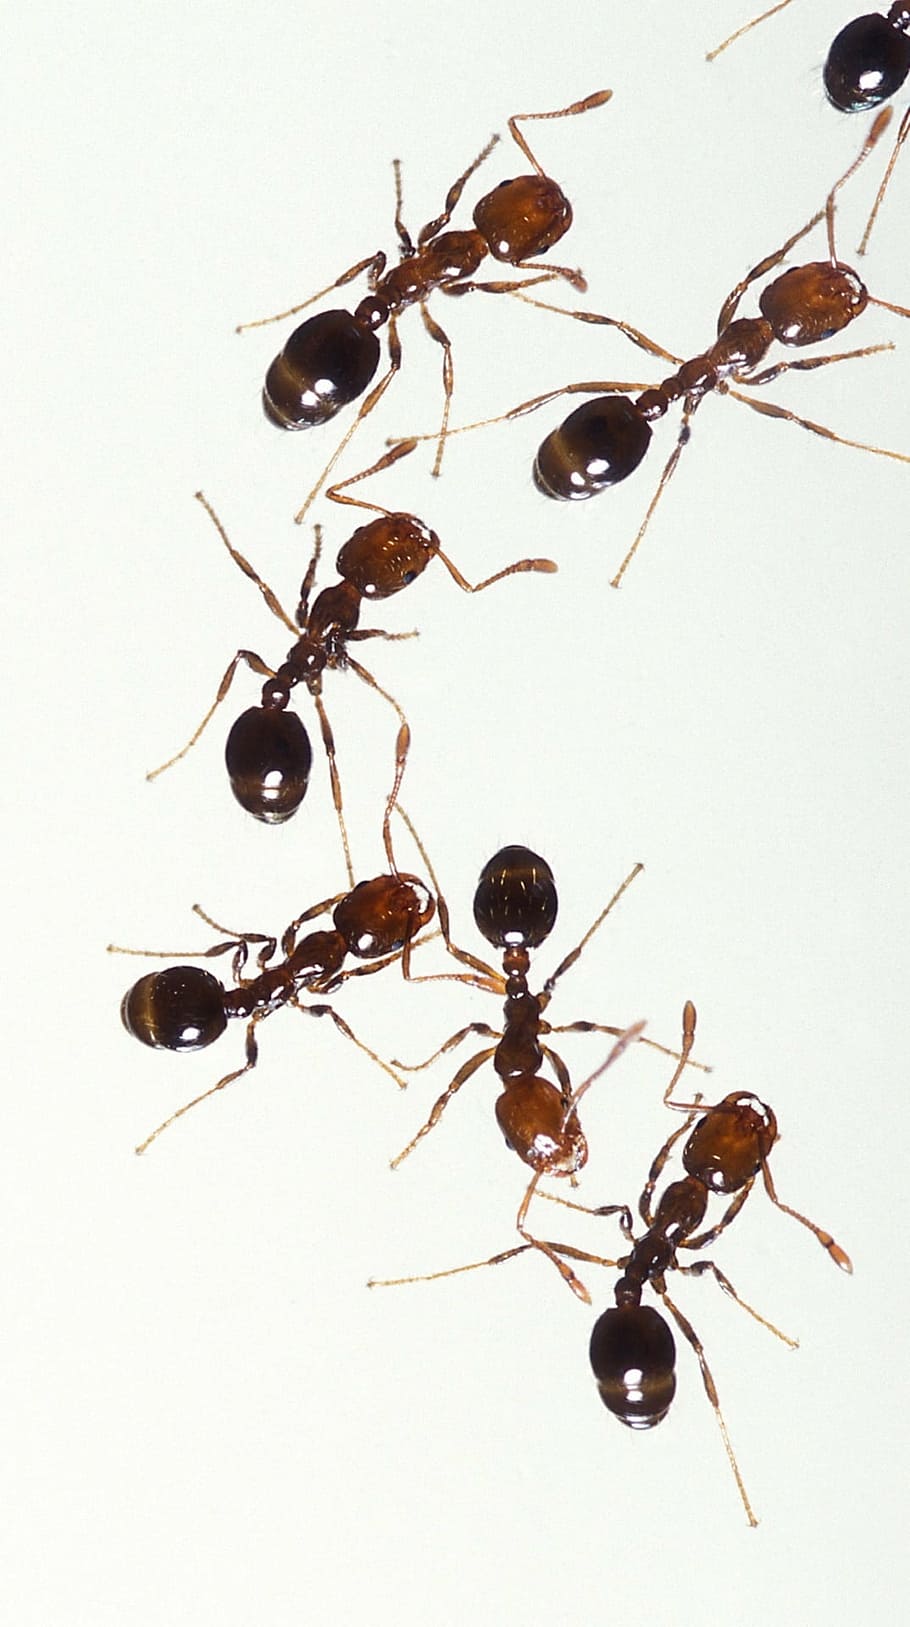 lote de hormigas marrones, hormigas de fuego, insectos, trabajador, plaga, macro, picadura, doloroso, trabajo en equipo, grupo